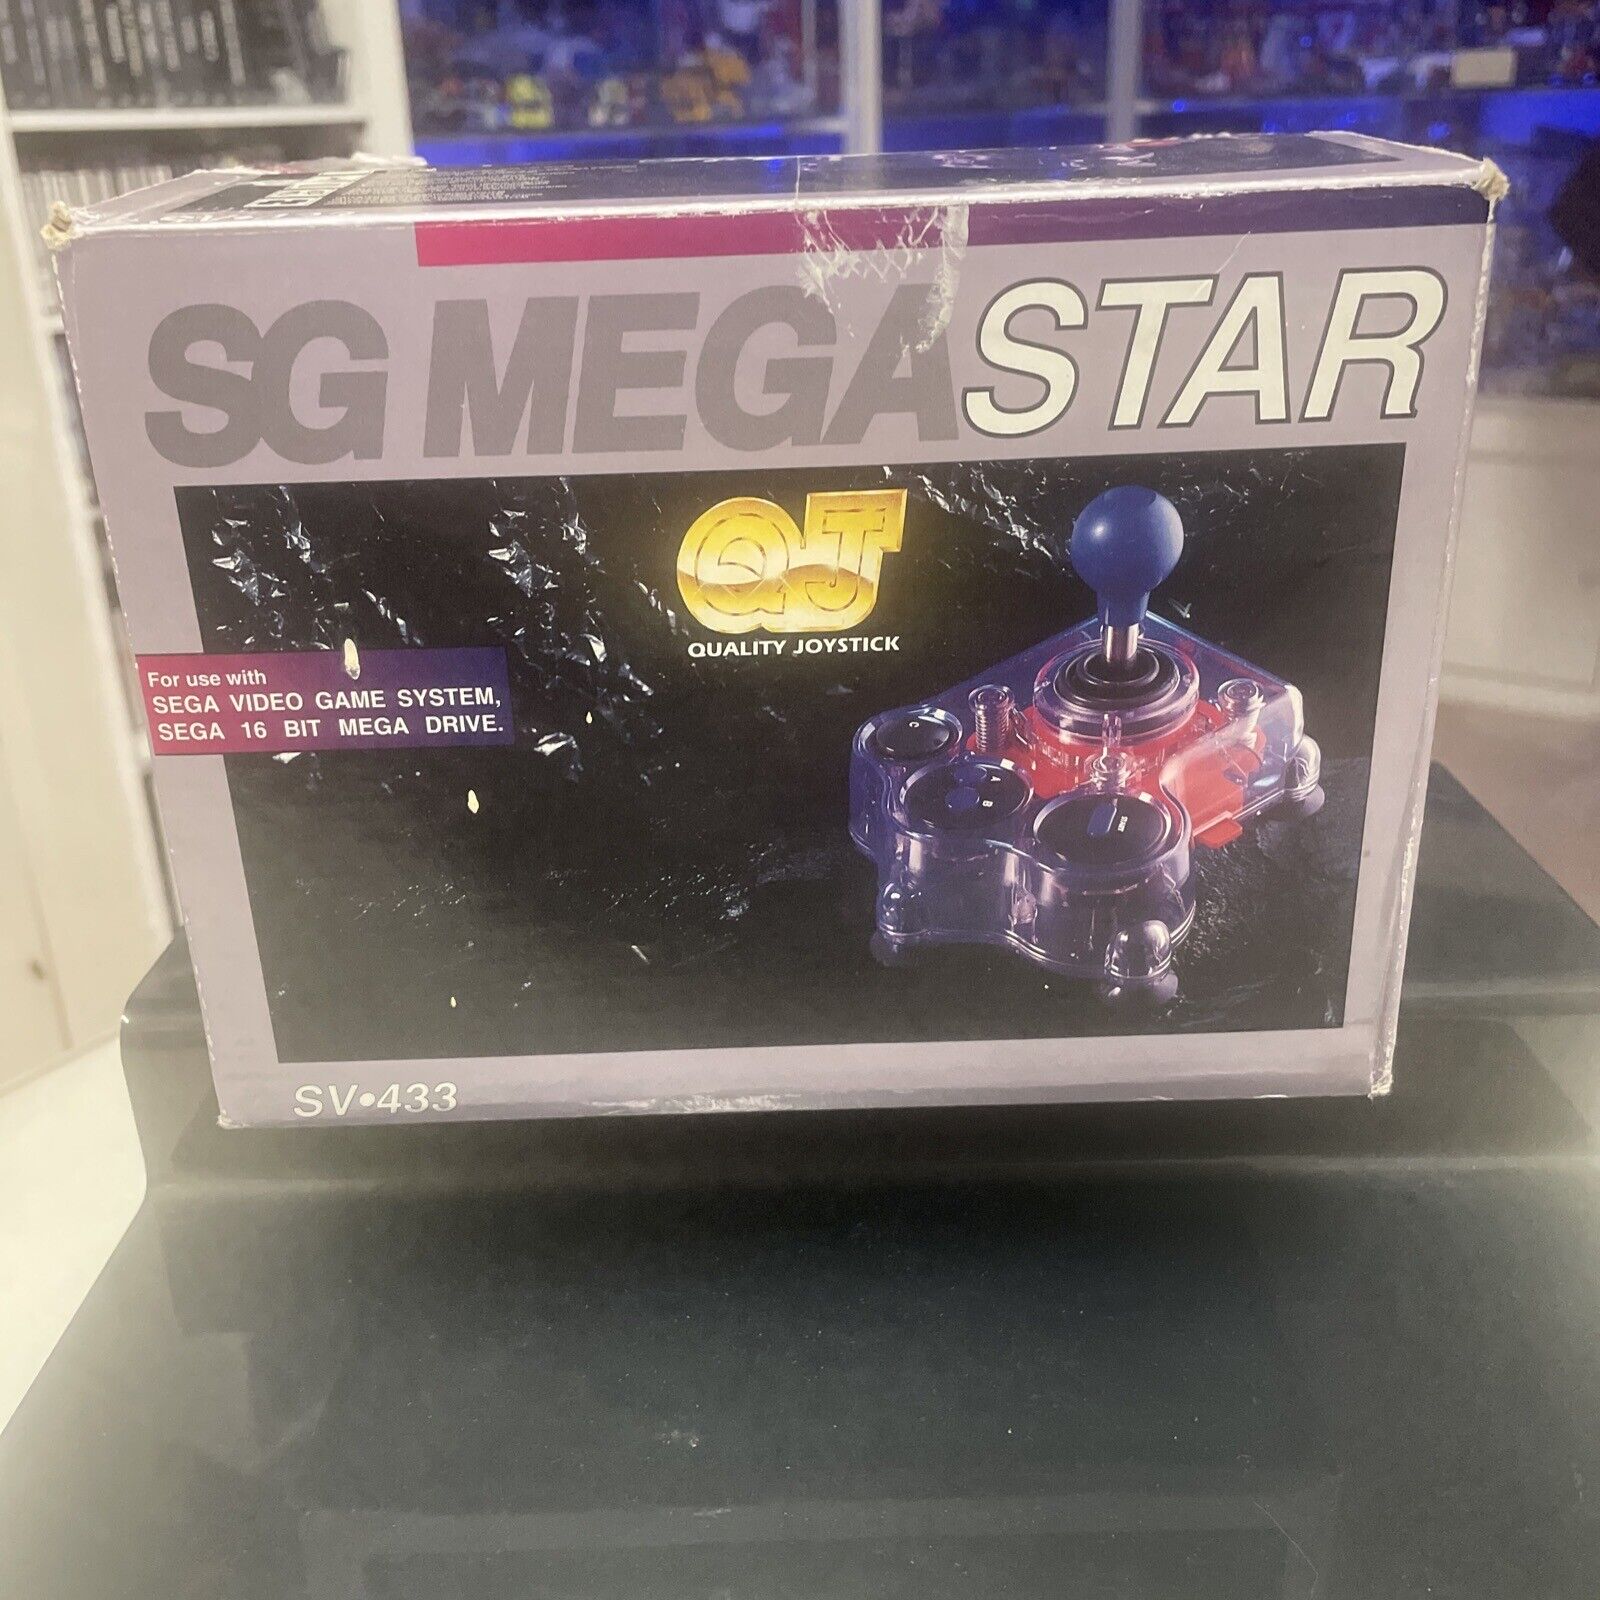 SG-MEGASTAR-QJ-Sega-Mega-Drive-Joystick-1-145552083364